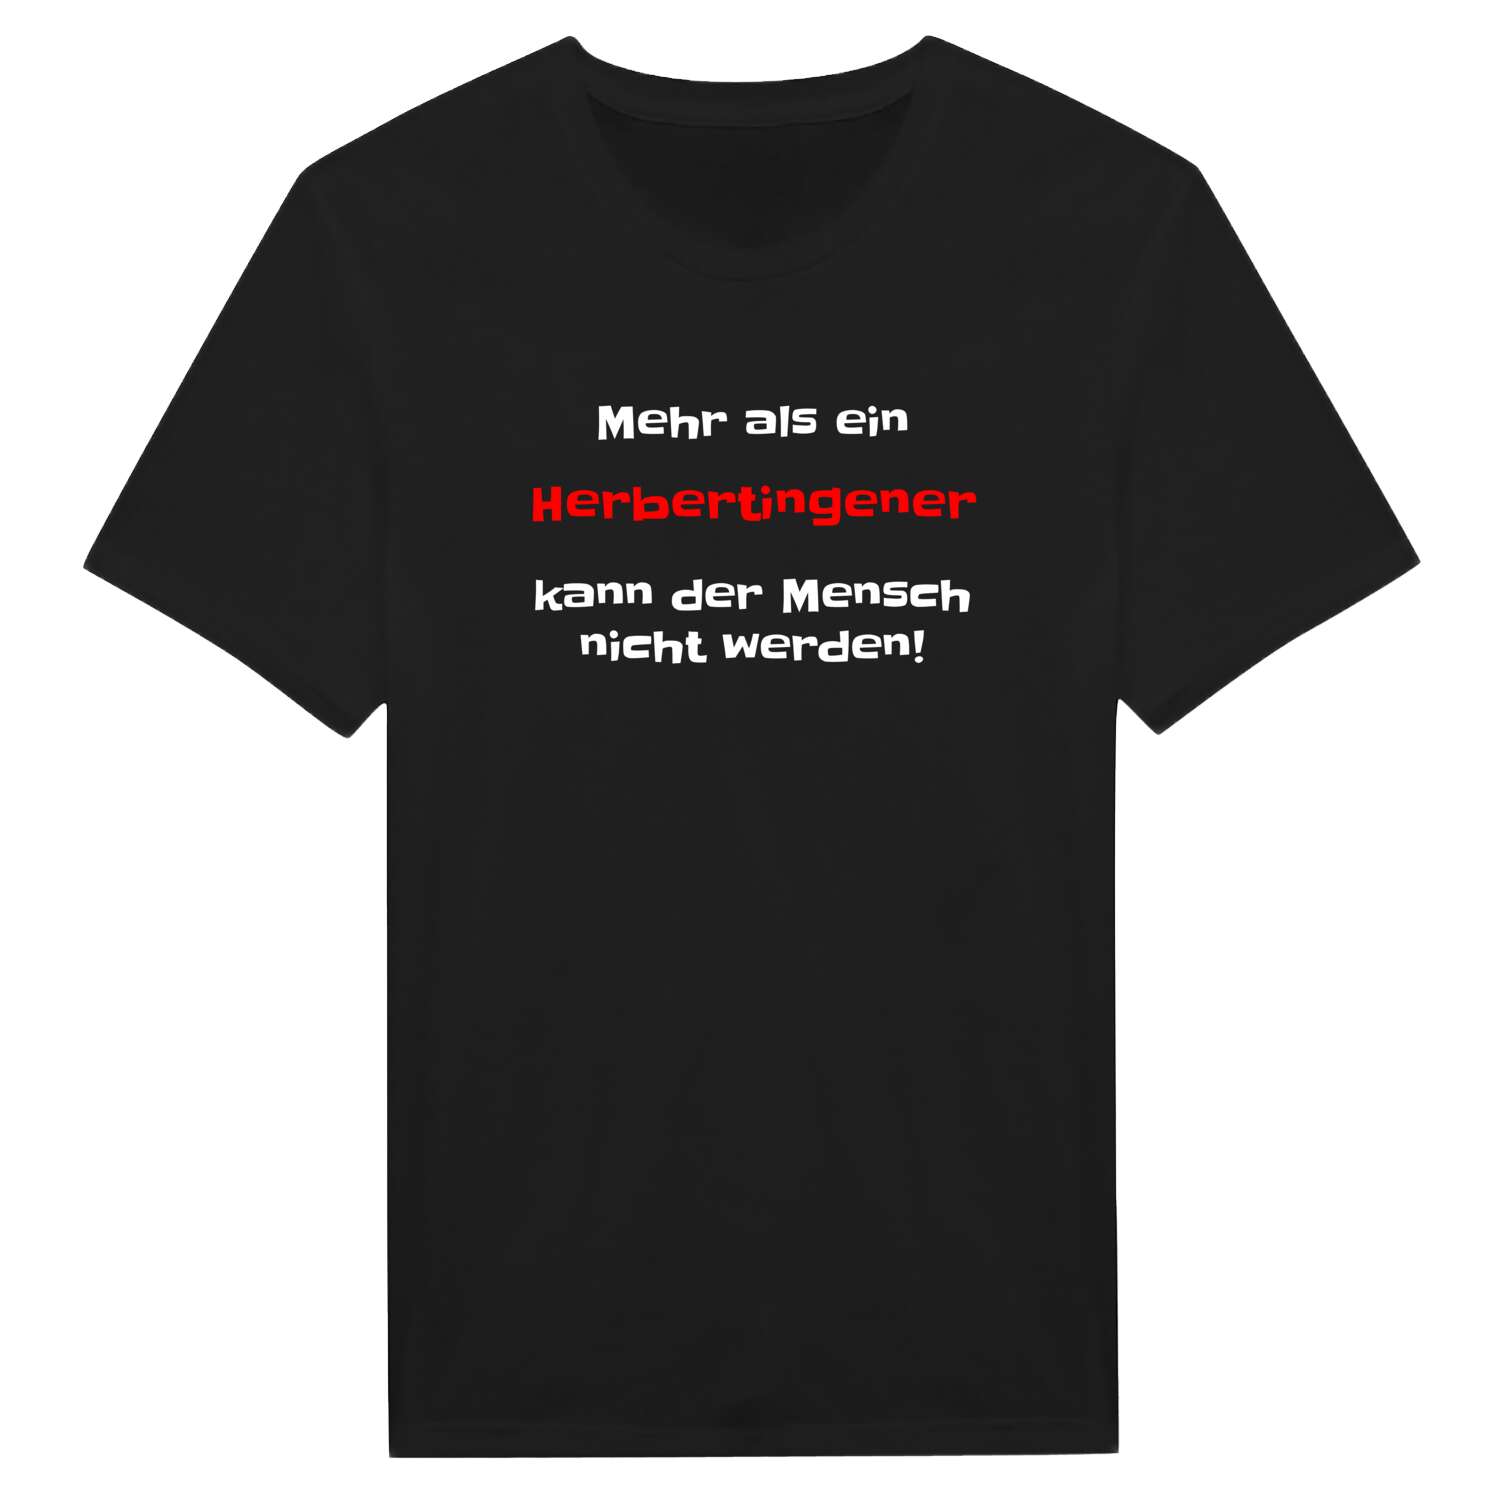 Herbertingen T-Shirt »Mehr als ein«